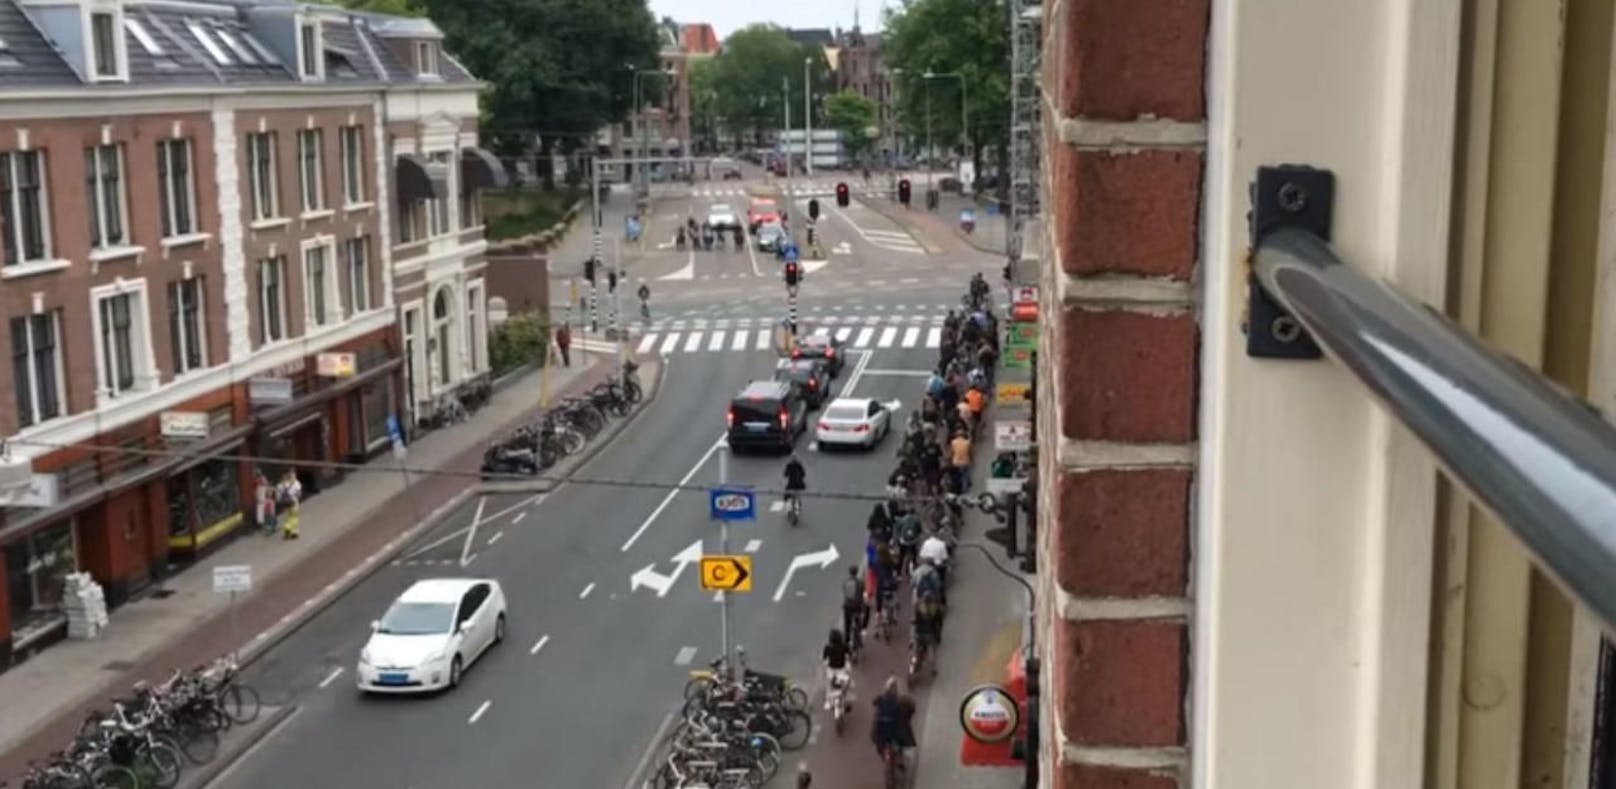 In Amsterdam soll ein Holocaust-Mahnmal aus 102.000 Backsteinen entstehen. Die Anrainer der Gegend wollen das verhindern und reichten Klage ein.